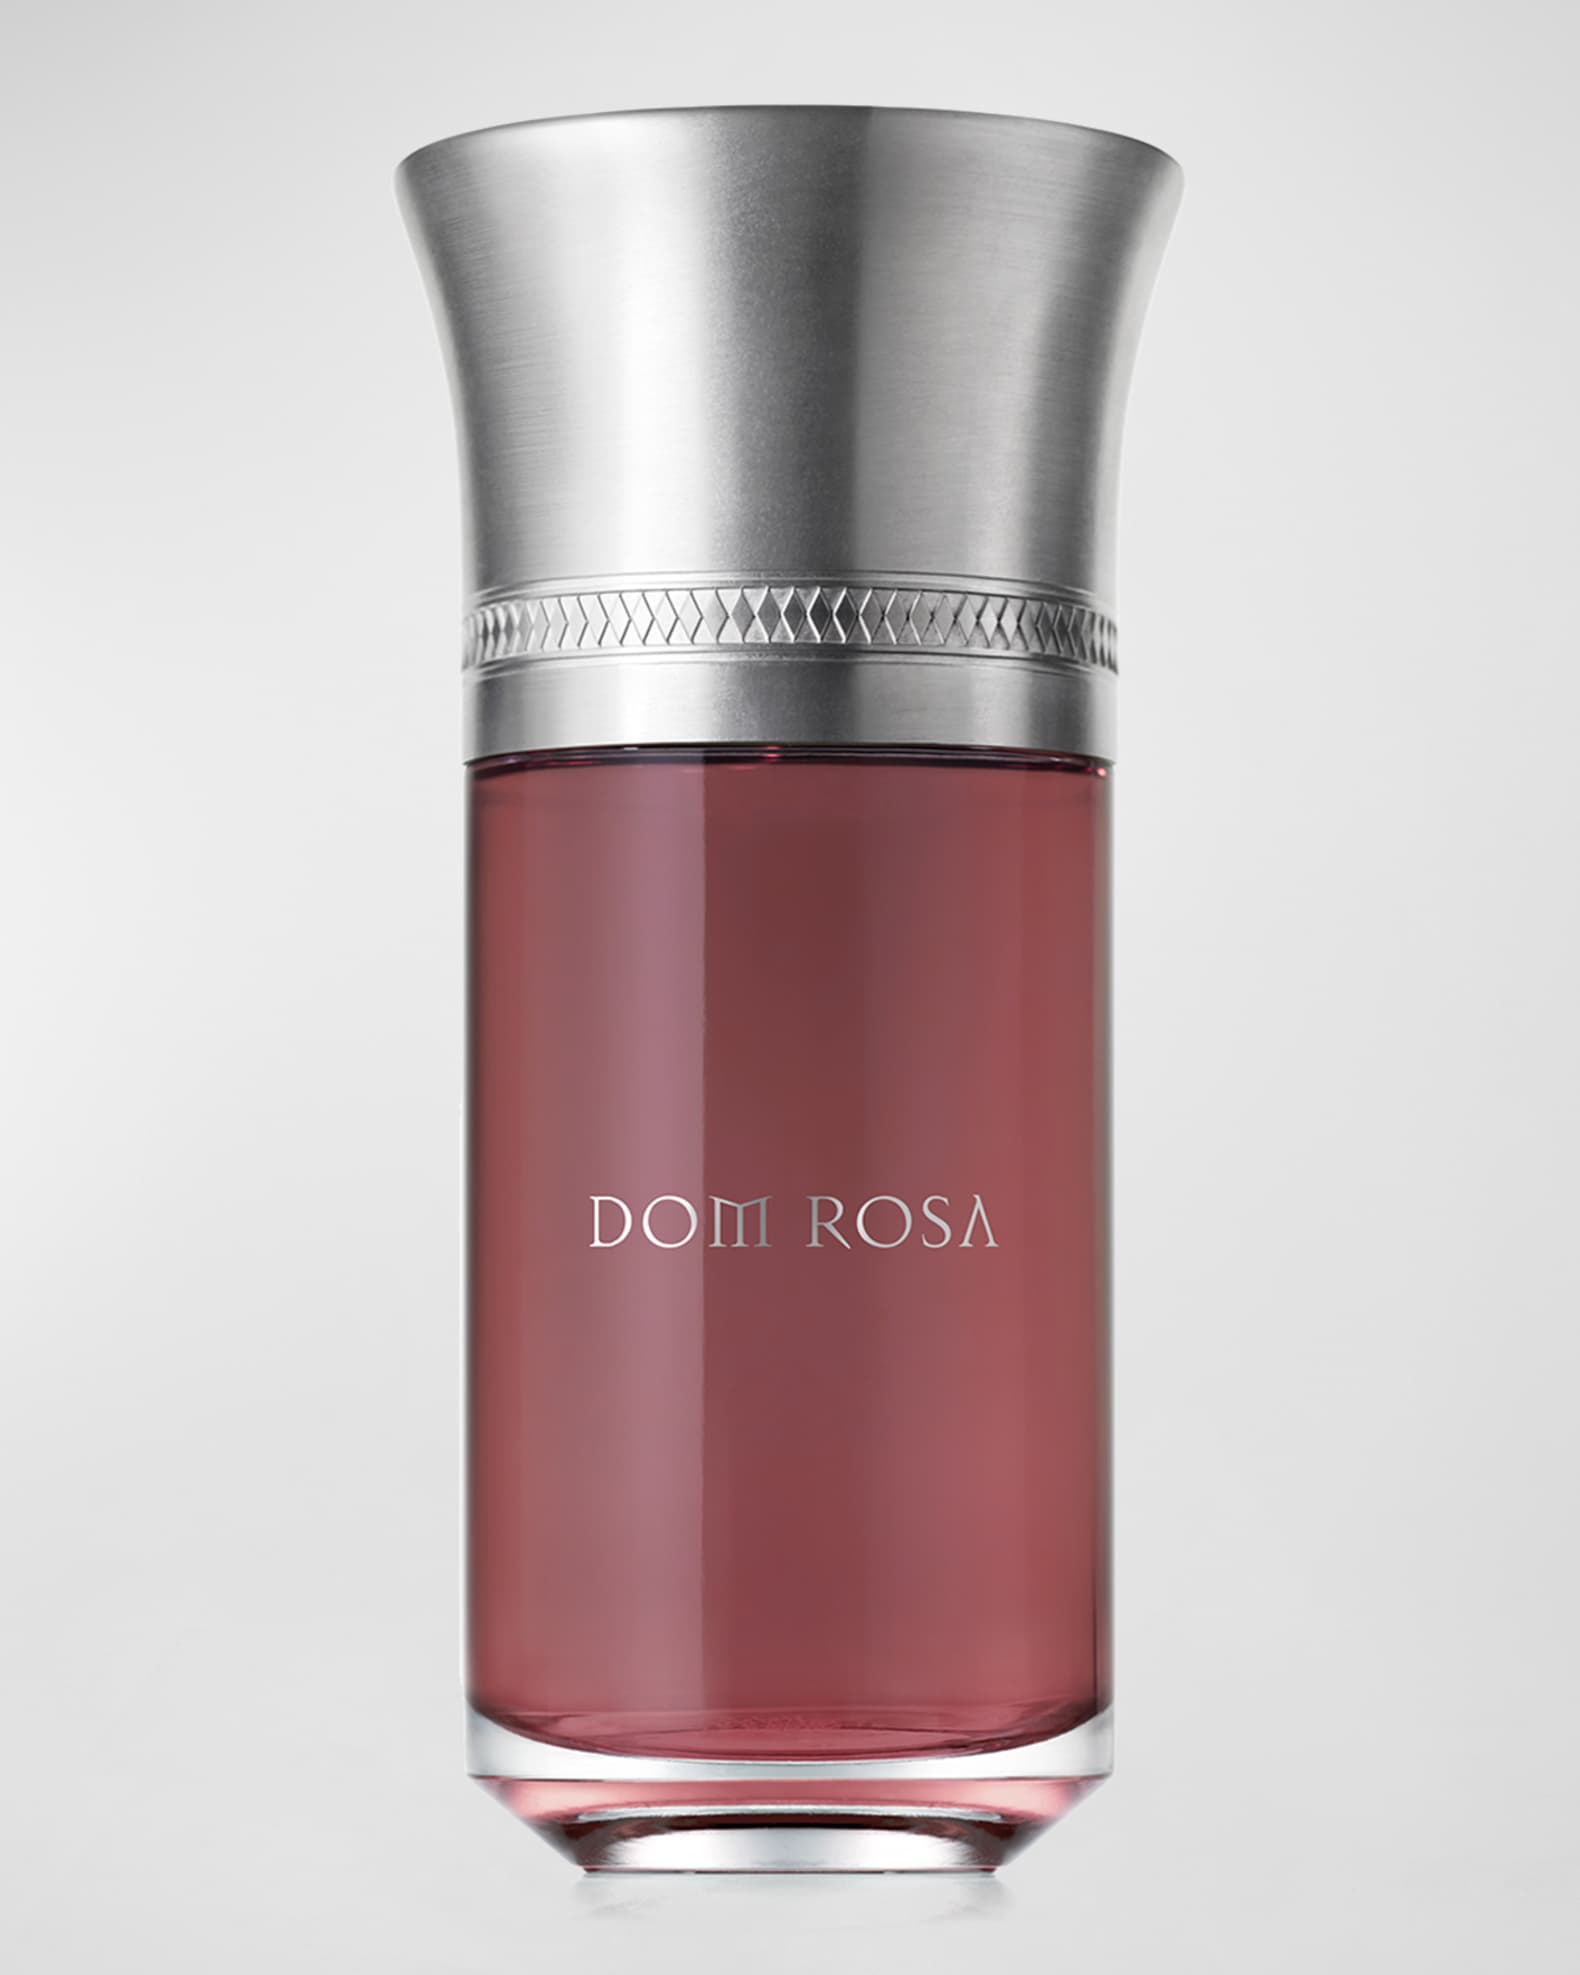 Luxury Women Perfume ROSE DES VENTS Eau De Parfum SPRAY 100ml 3.4